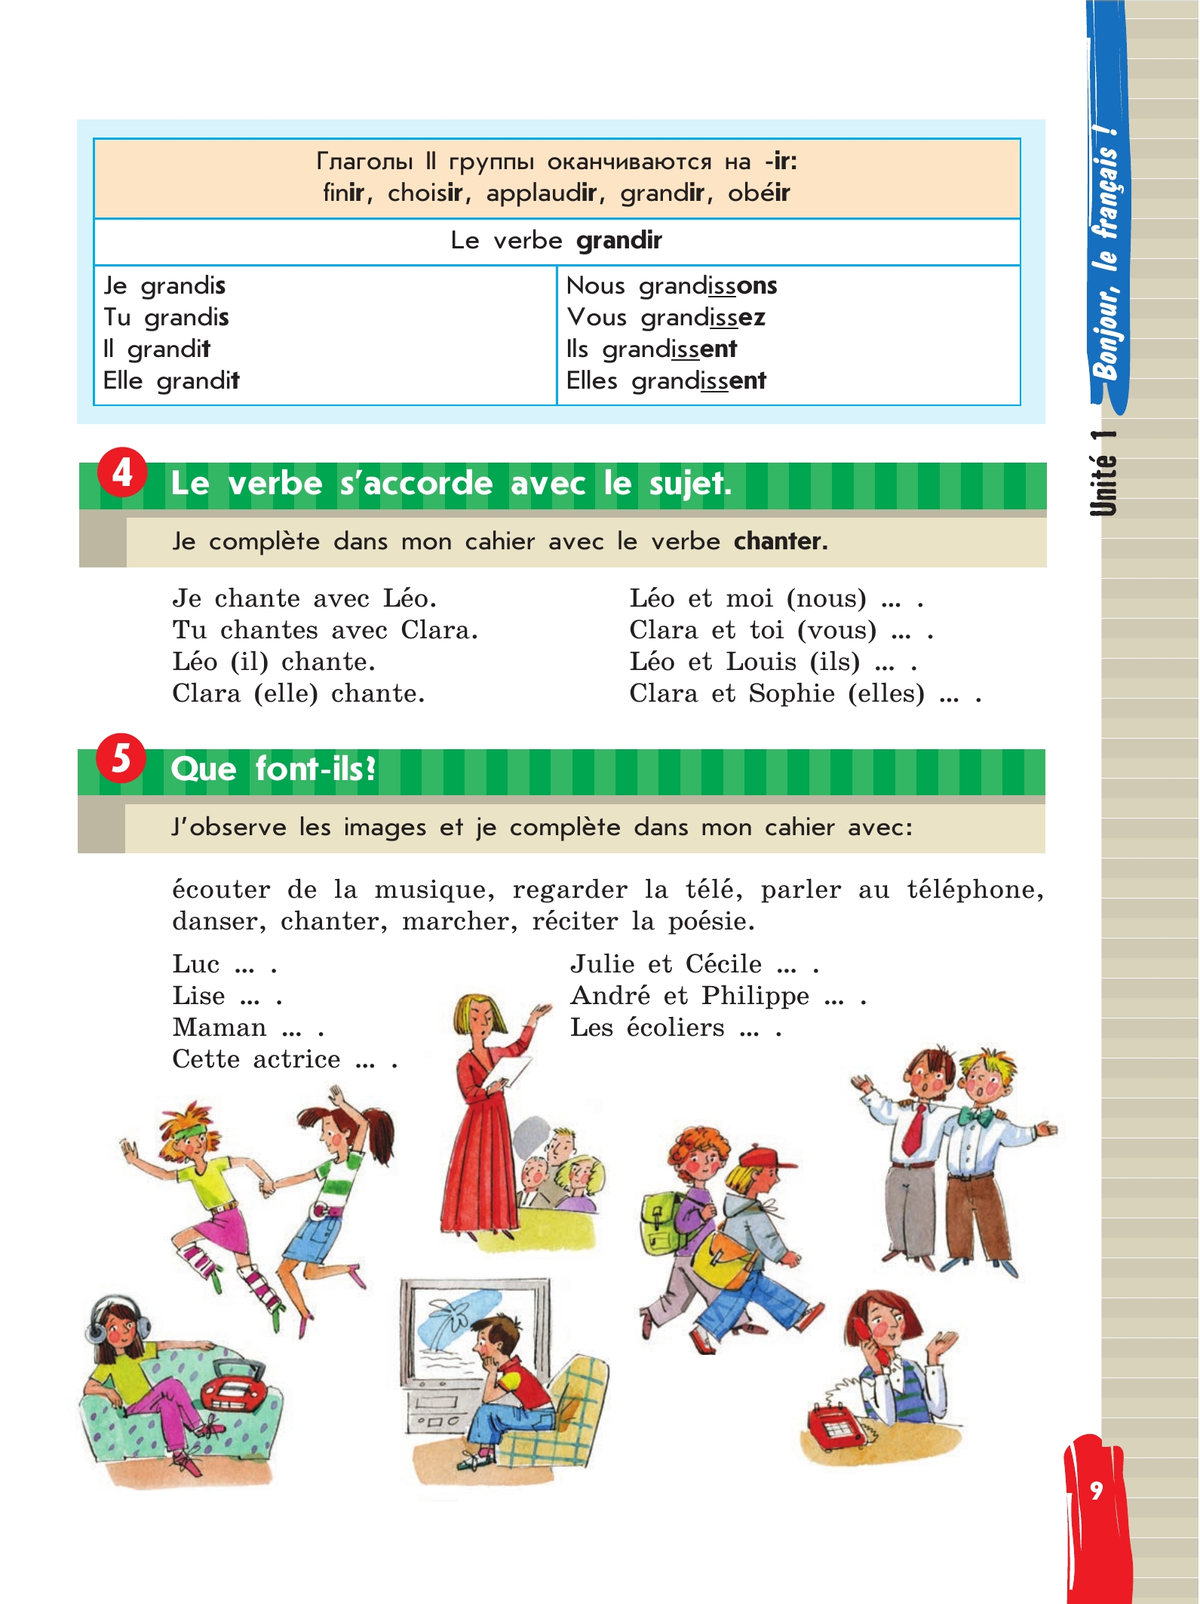 Французский язык. Второй иностранный язык. 5 класс. Учебник. В 2 ч. Часть 1 5